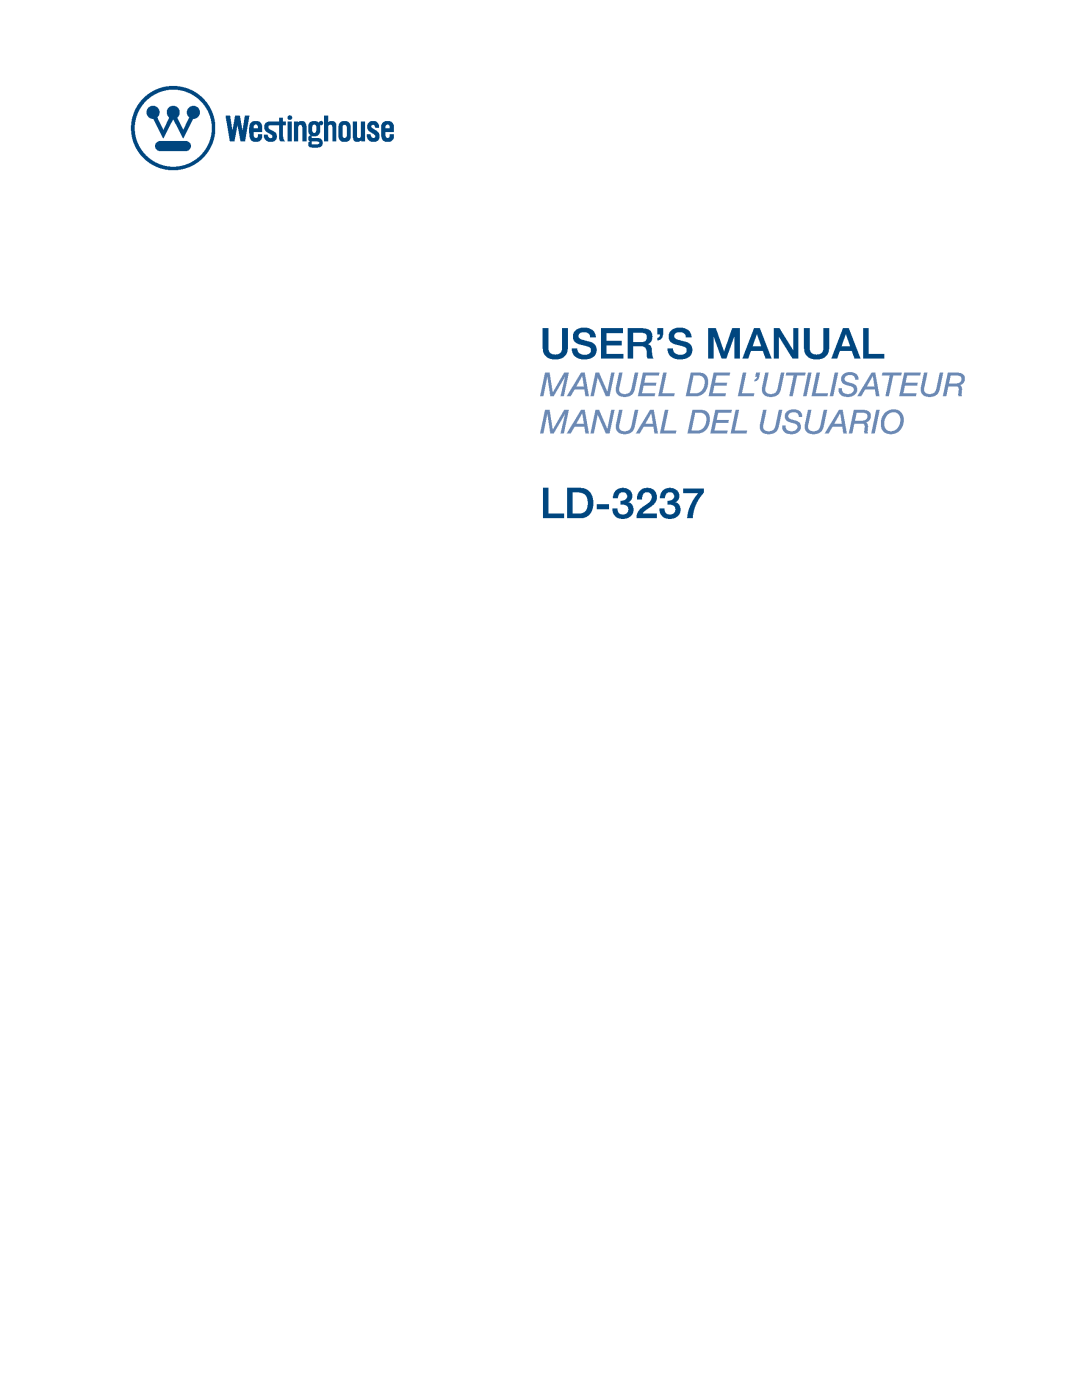 Westinghouse LD-3237 user manual User’S Manual, Manuel De L’Utilisateur Manual Del Usuario 